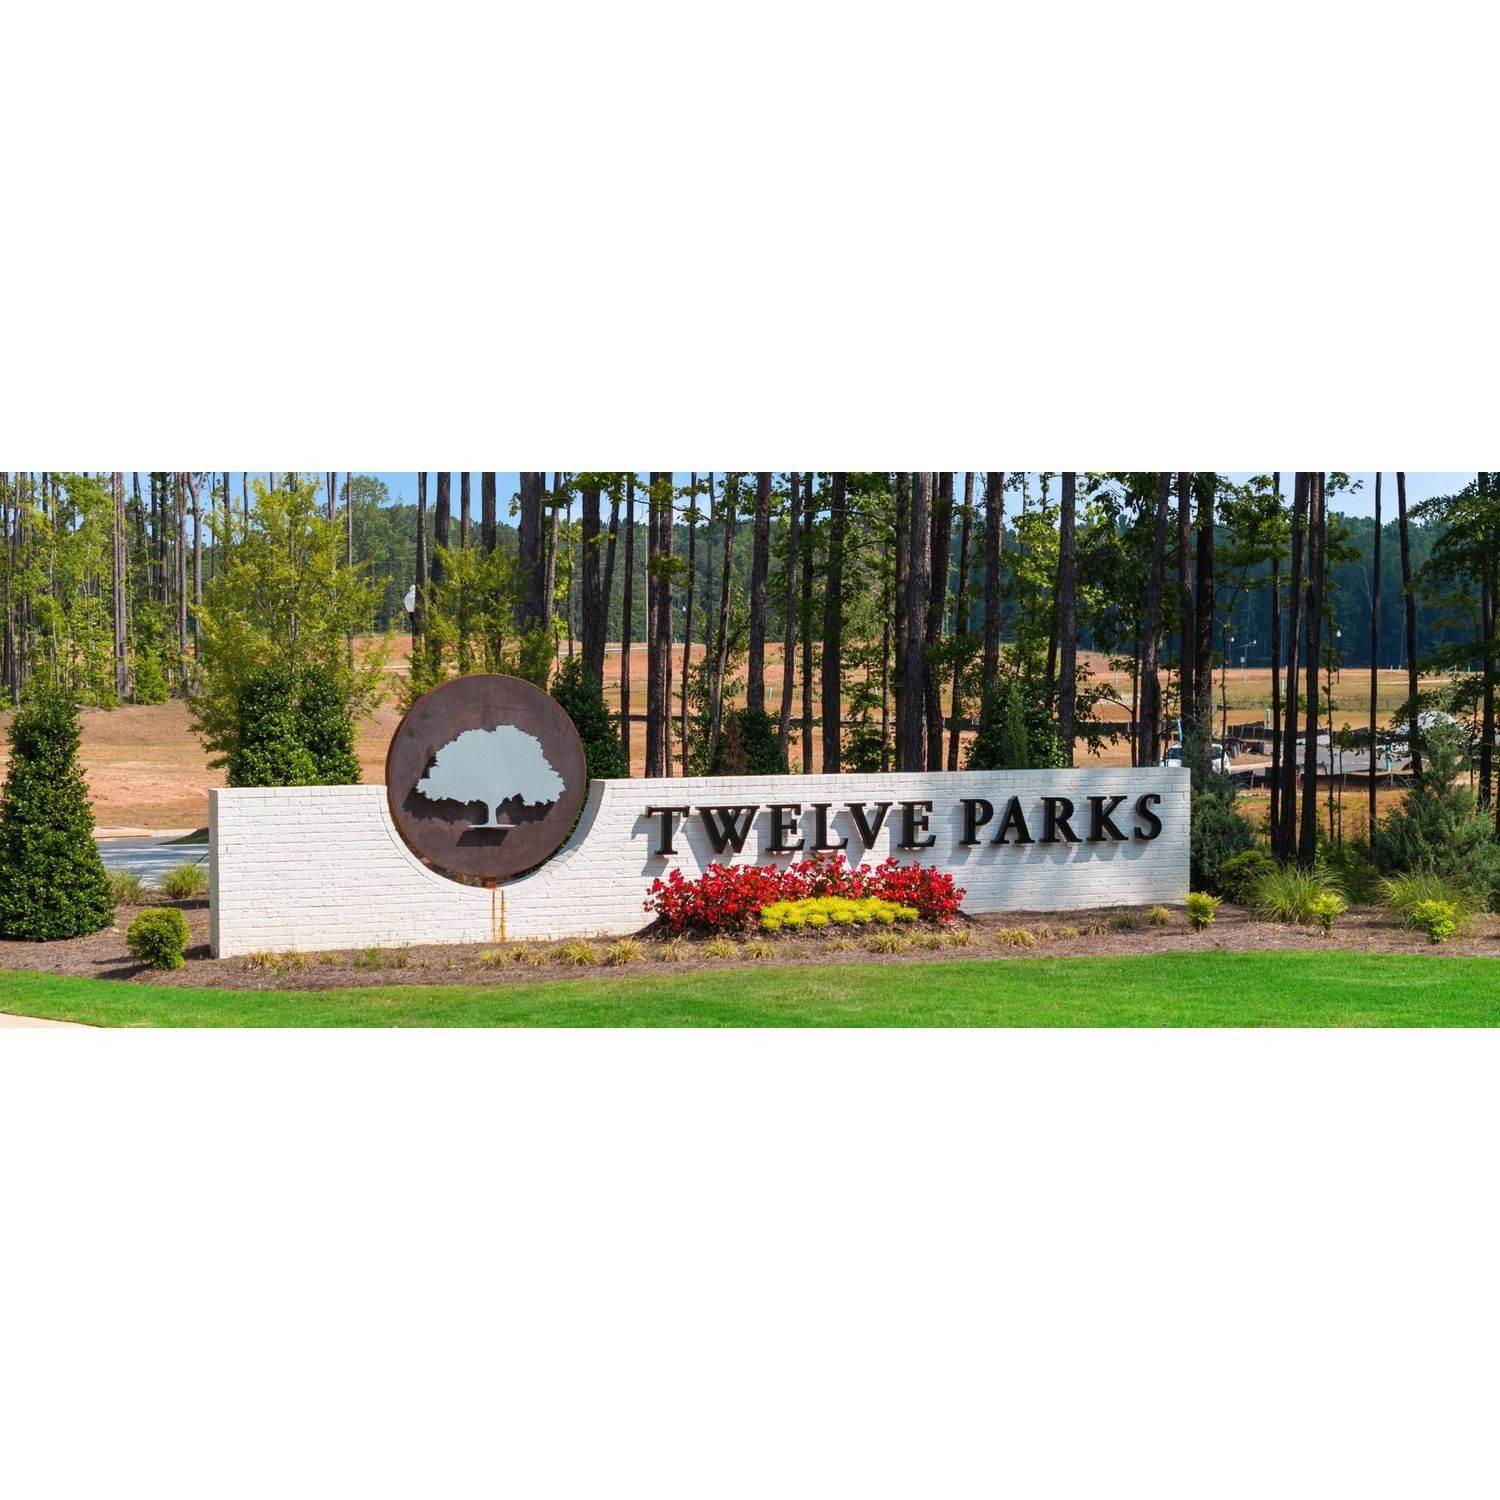 4. Twelve Parks - Twelve Parks Ranch建于 8 Foothills Trail, Sharpsburg, GA 30277